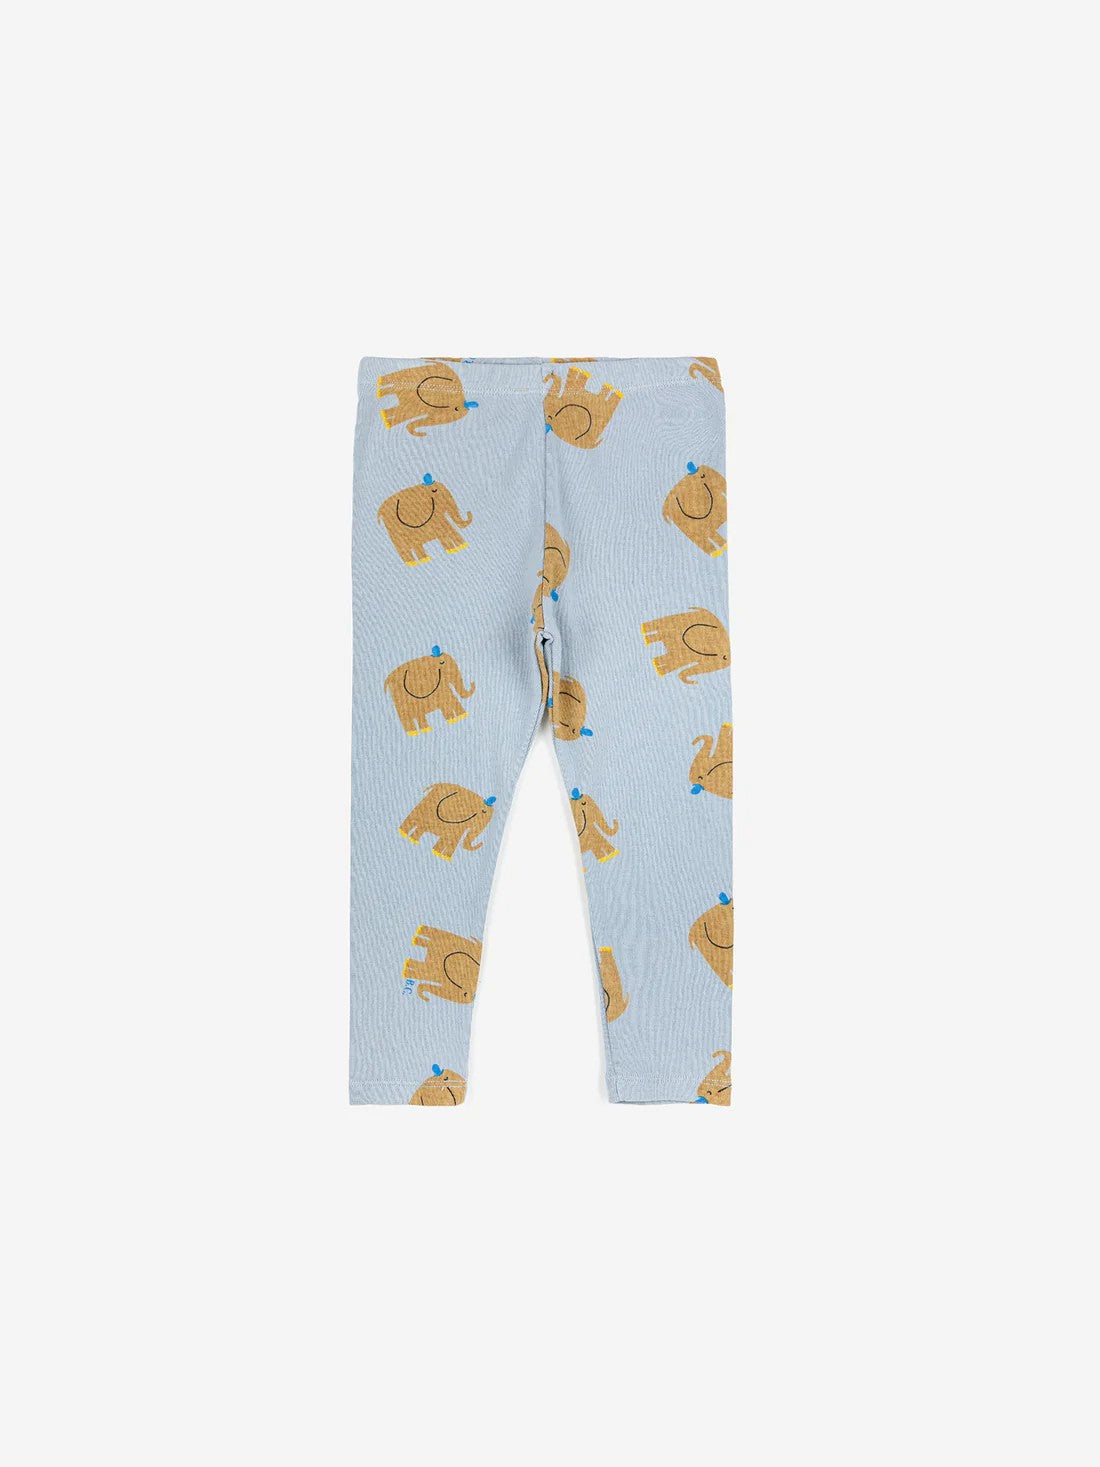 Bobo Choses elephant print leggings